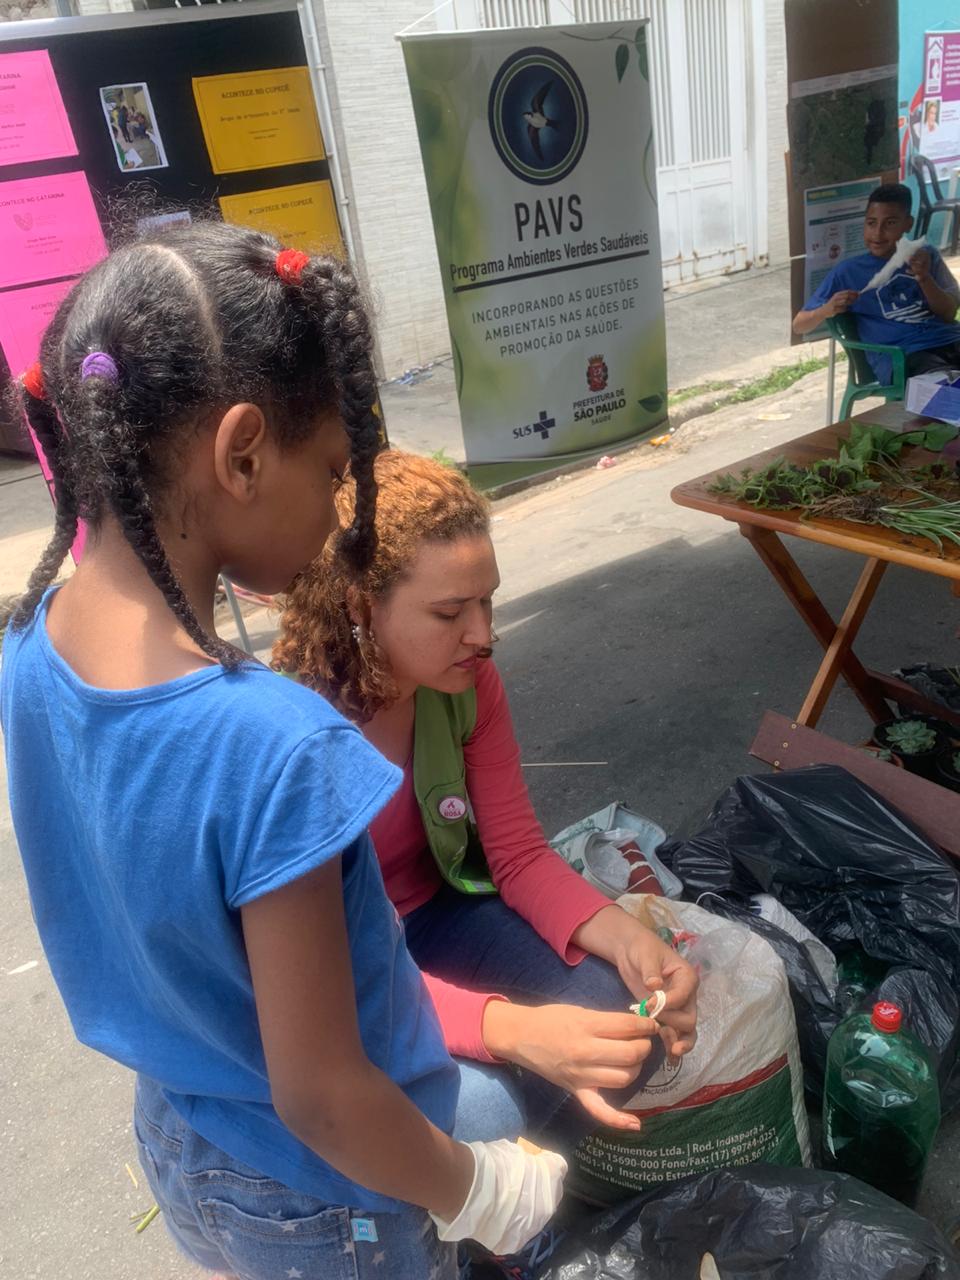 imagem da mulher e de uma menina aprendendo a usar planta do pavs